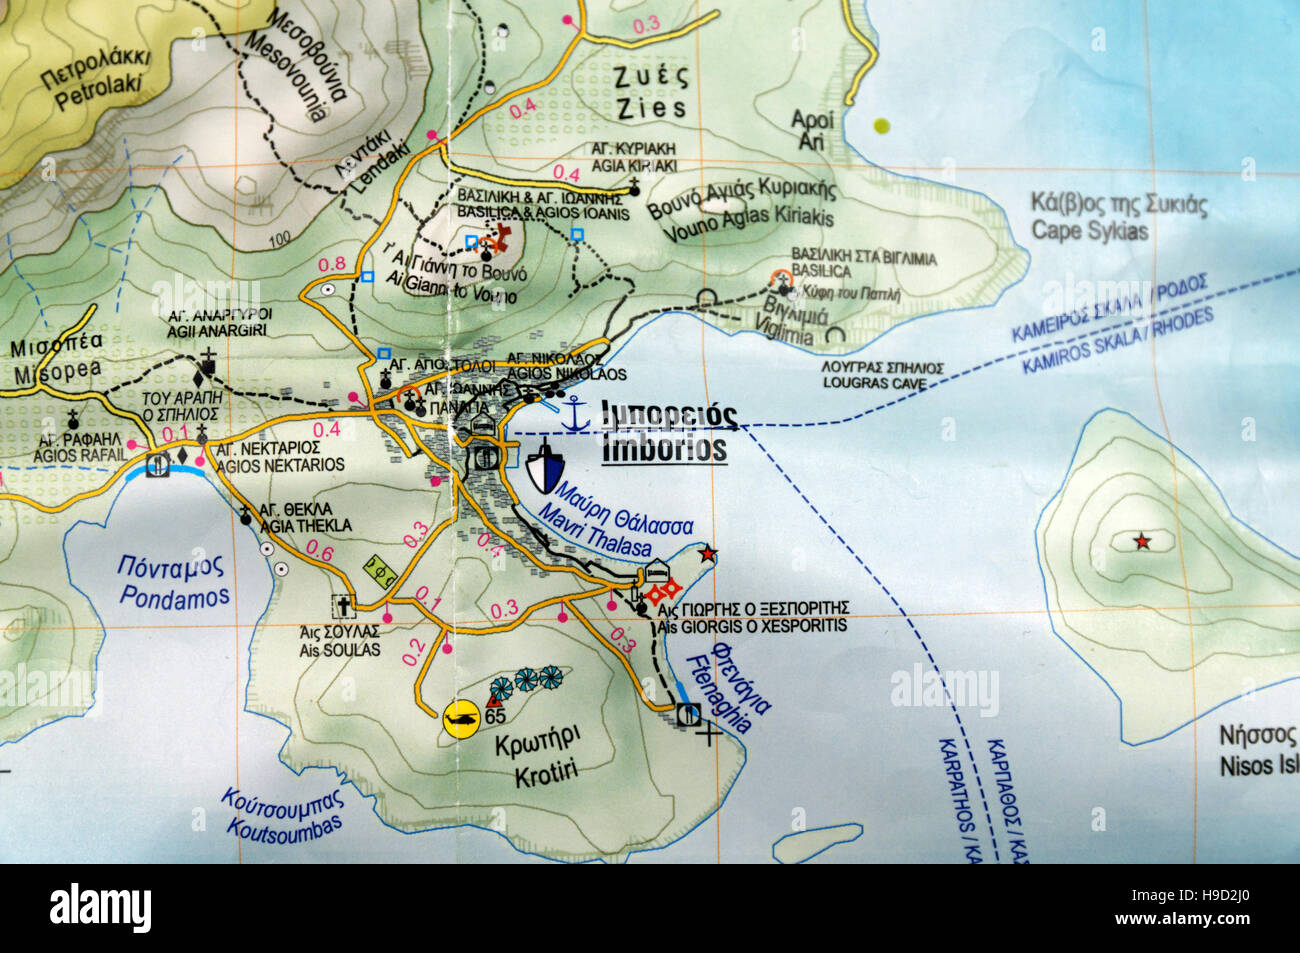 Carte des îles Topo l'île grecque de l'île de Chalki. Banque D'Images